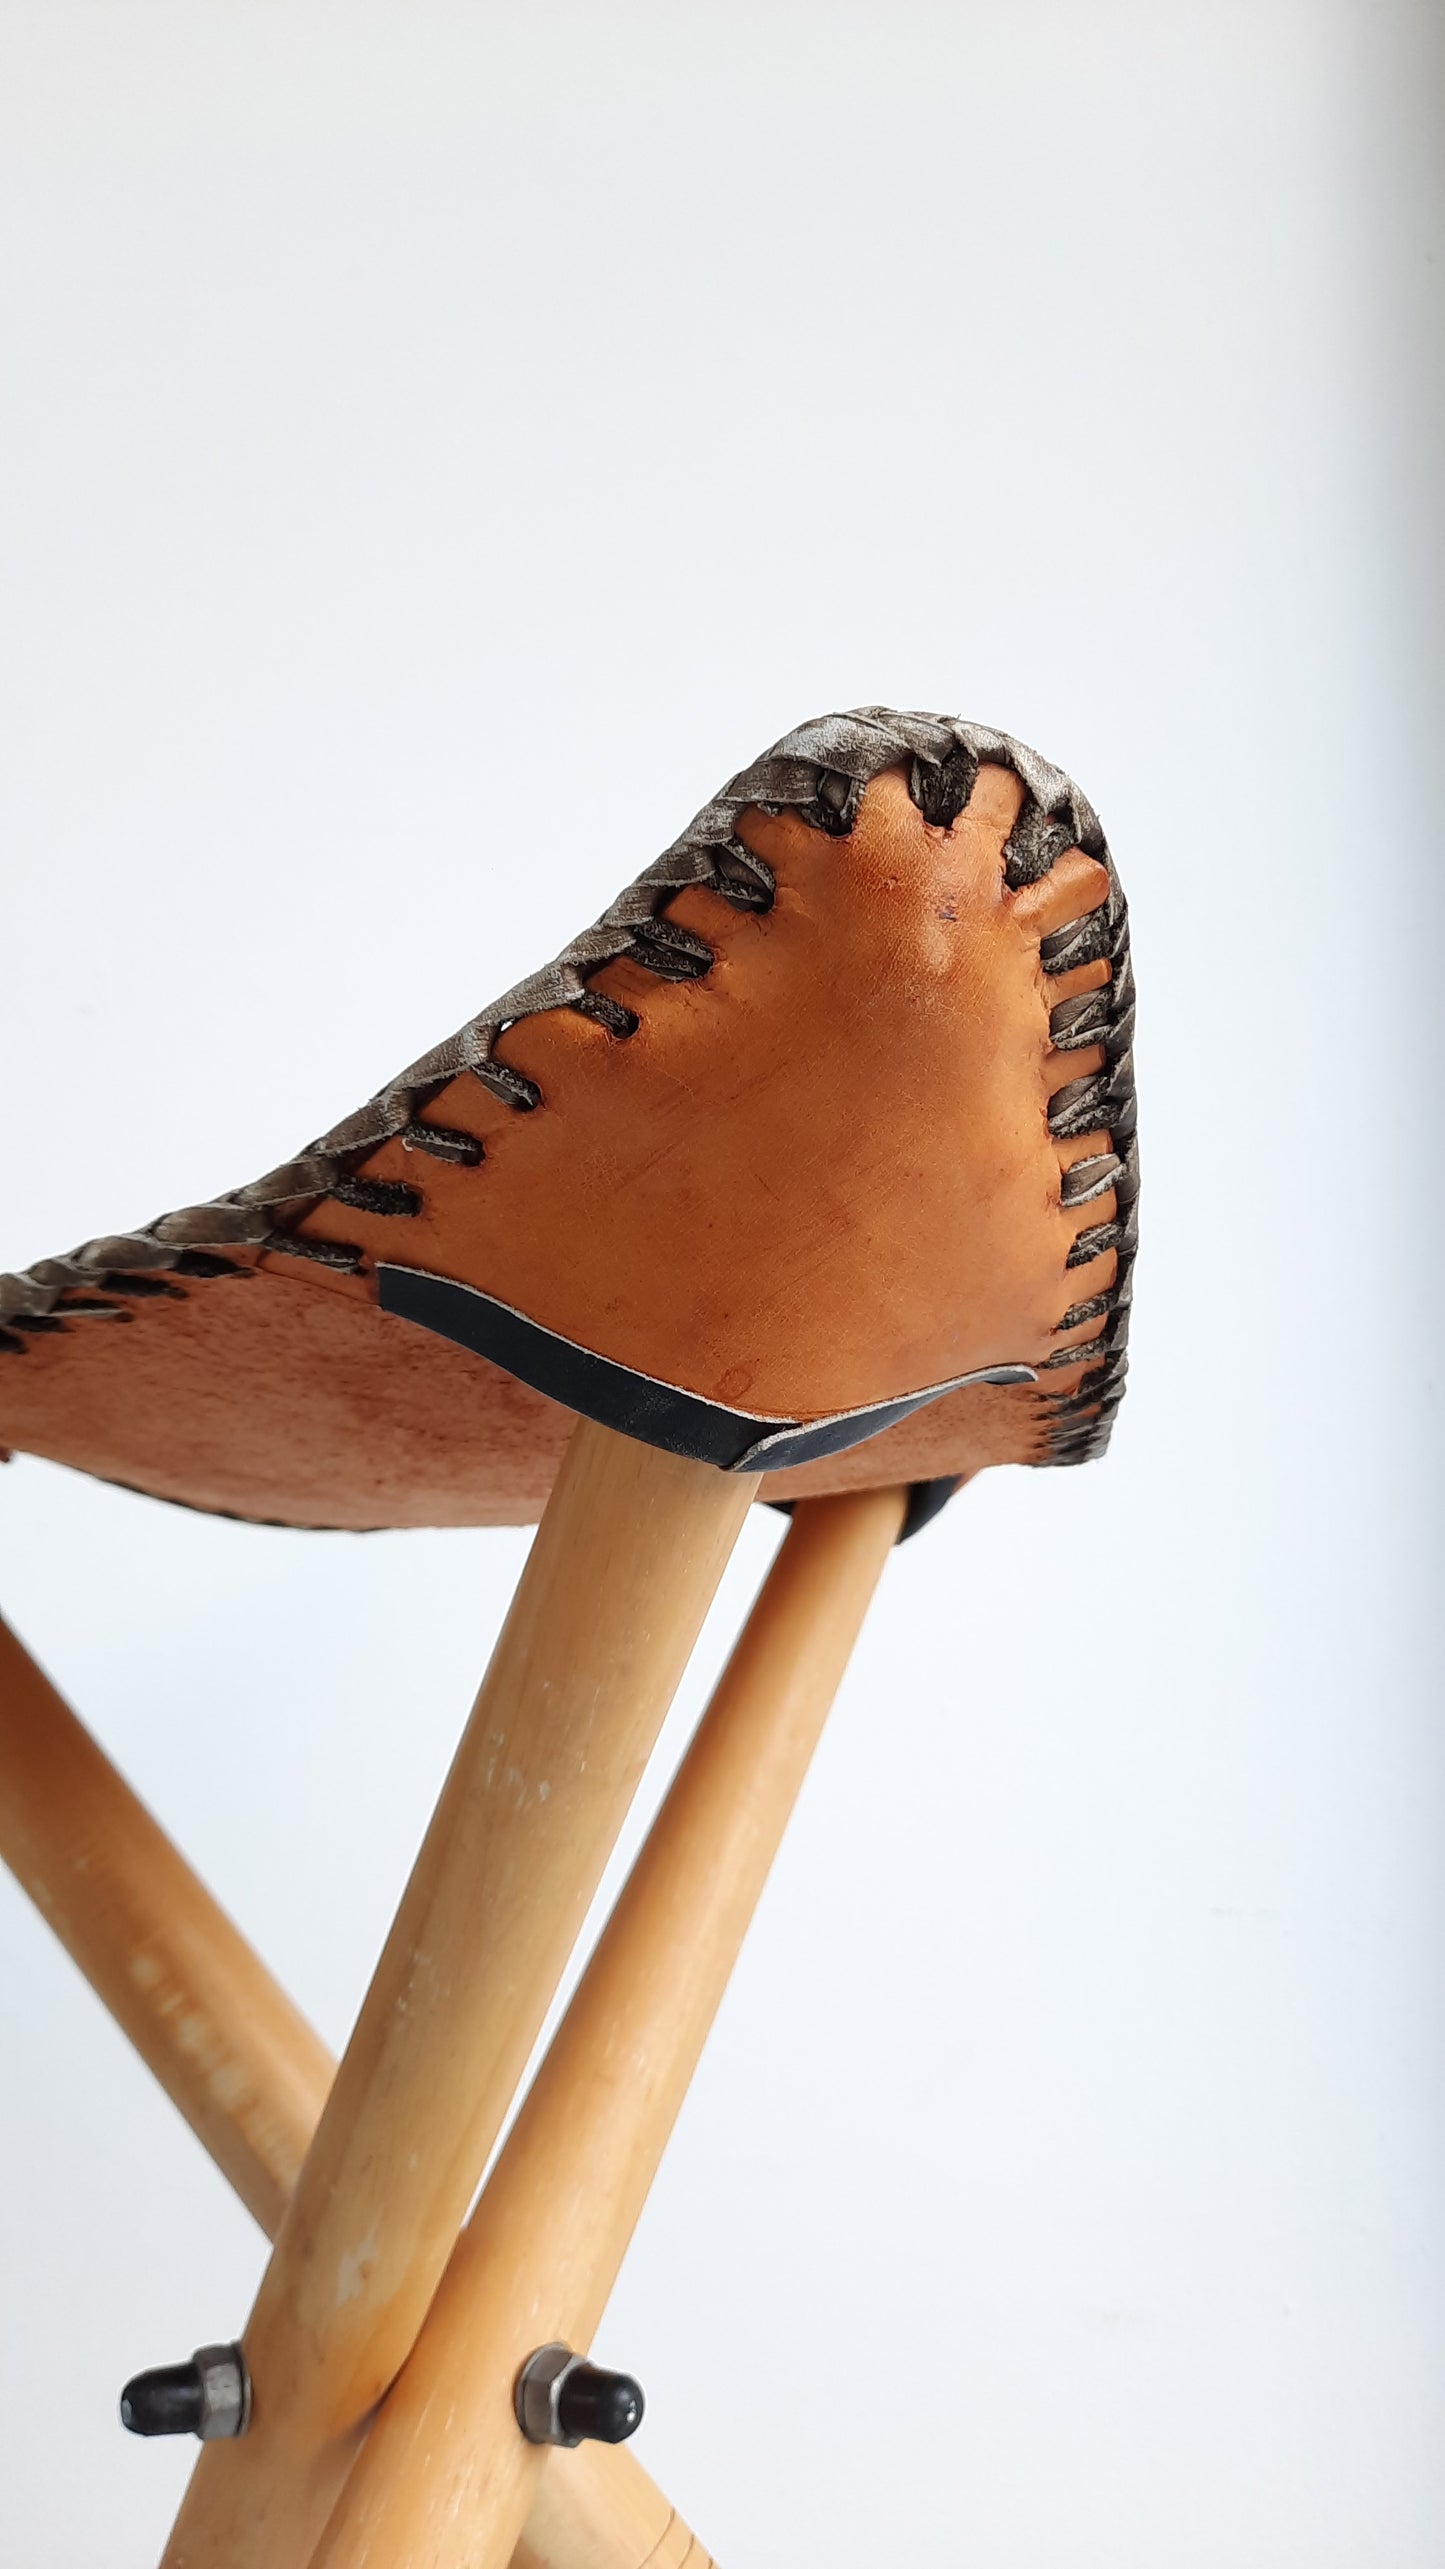 Vintage Leather & Wood Tripod Stool